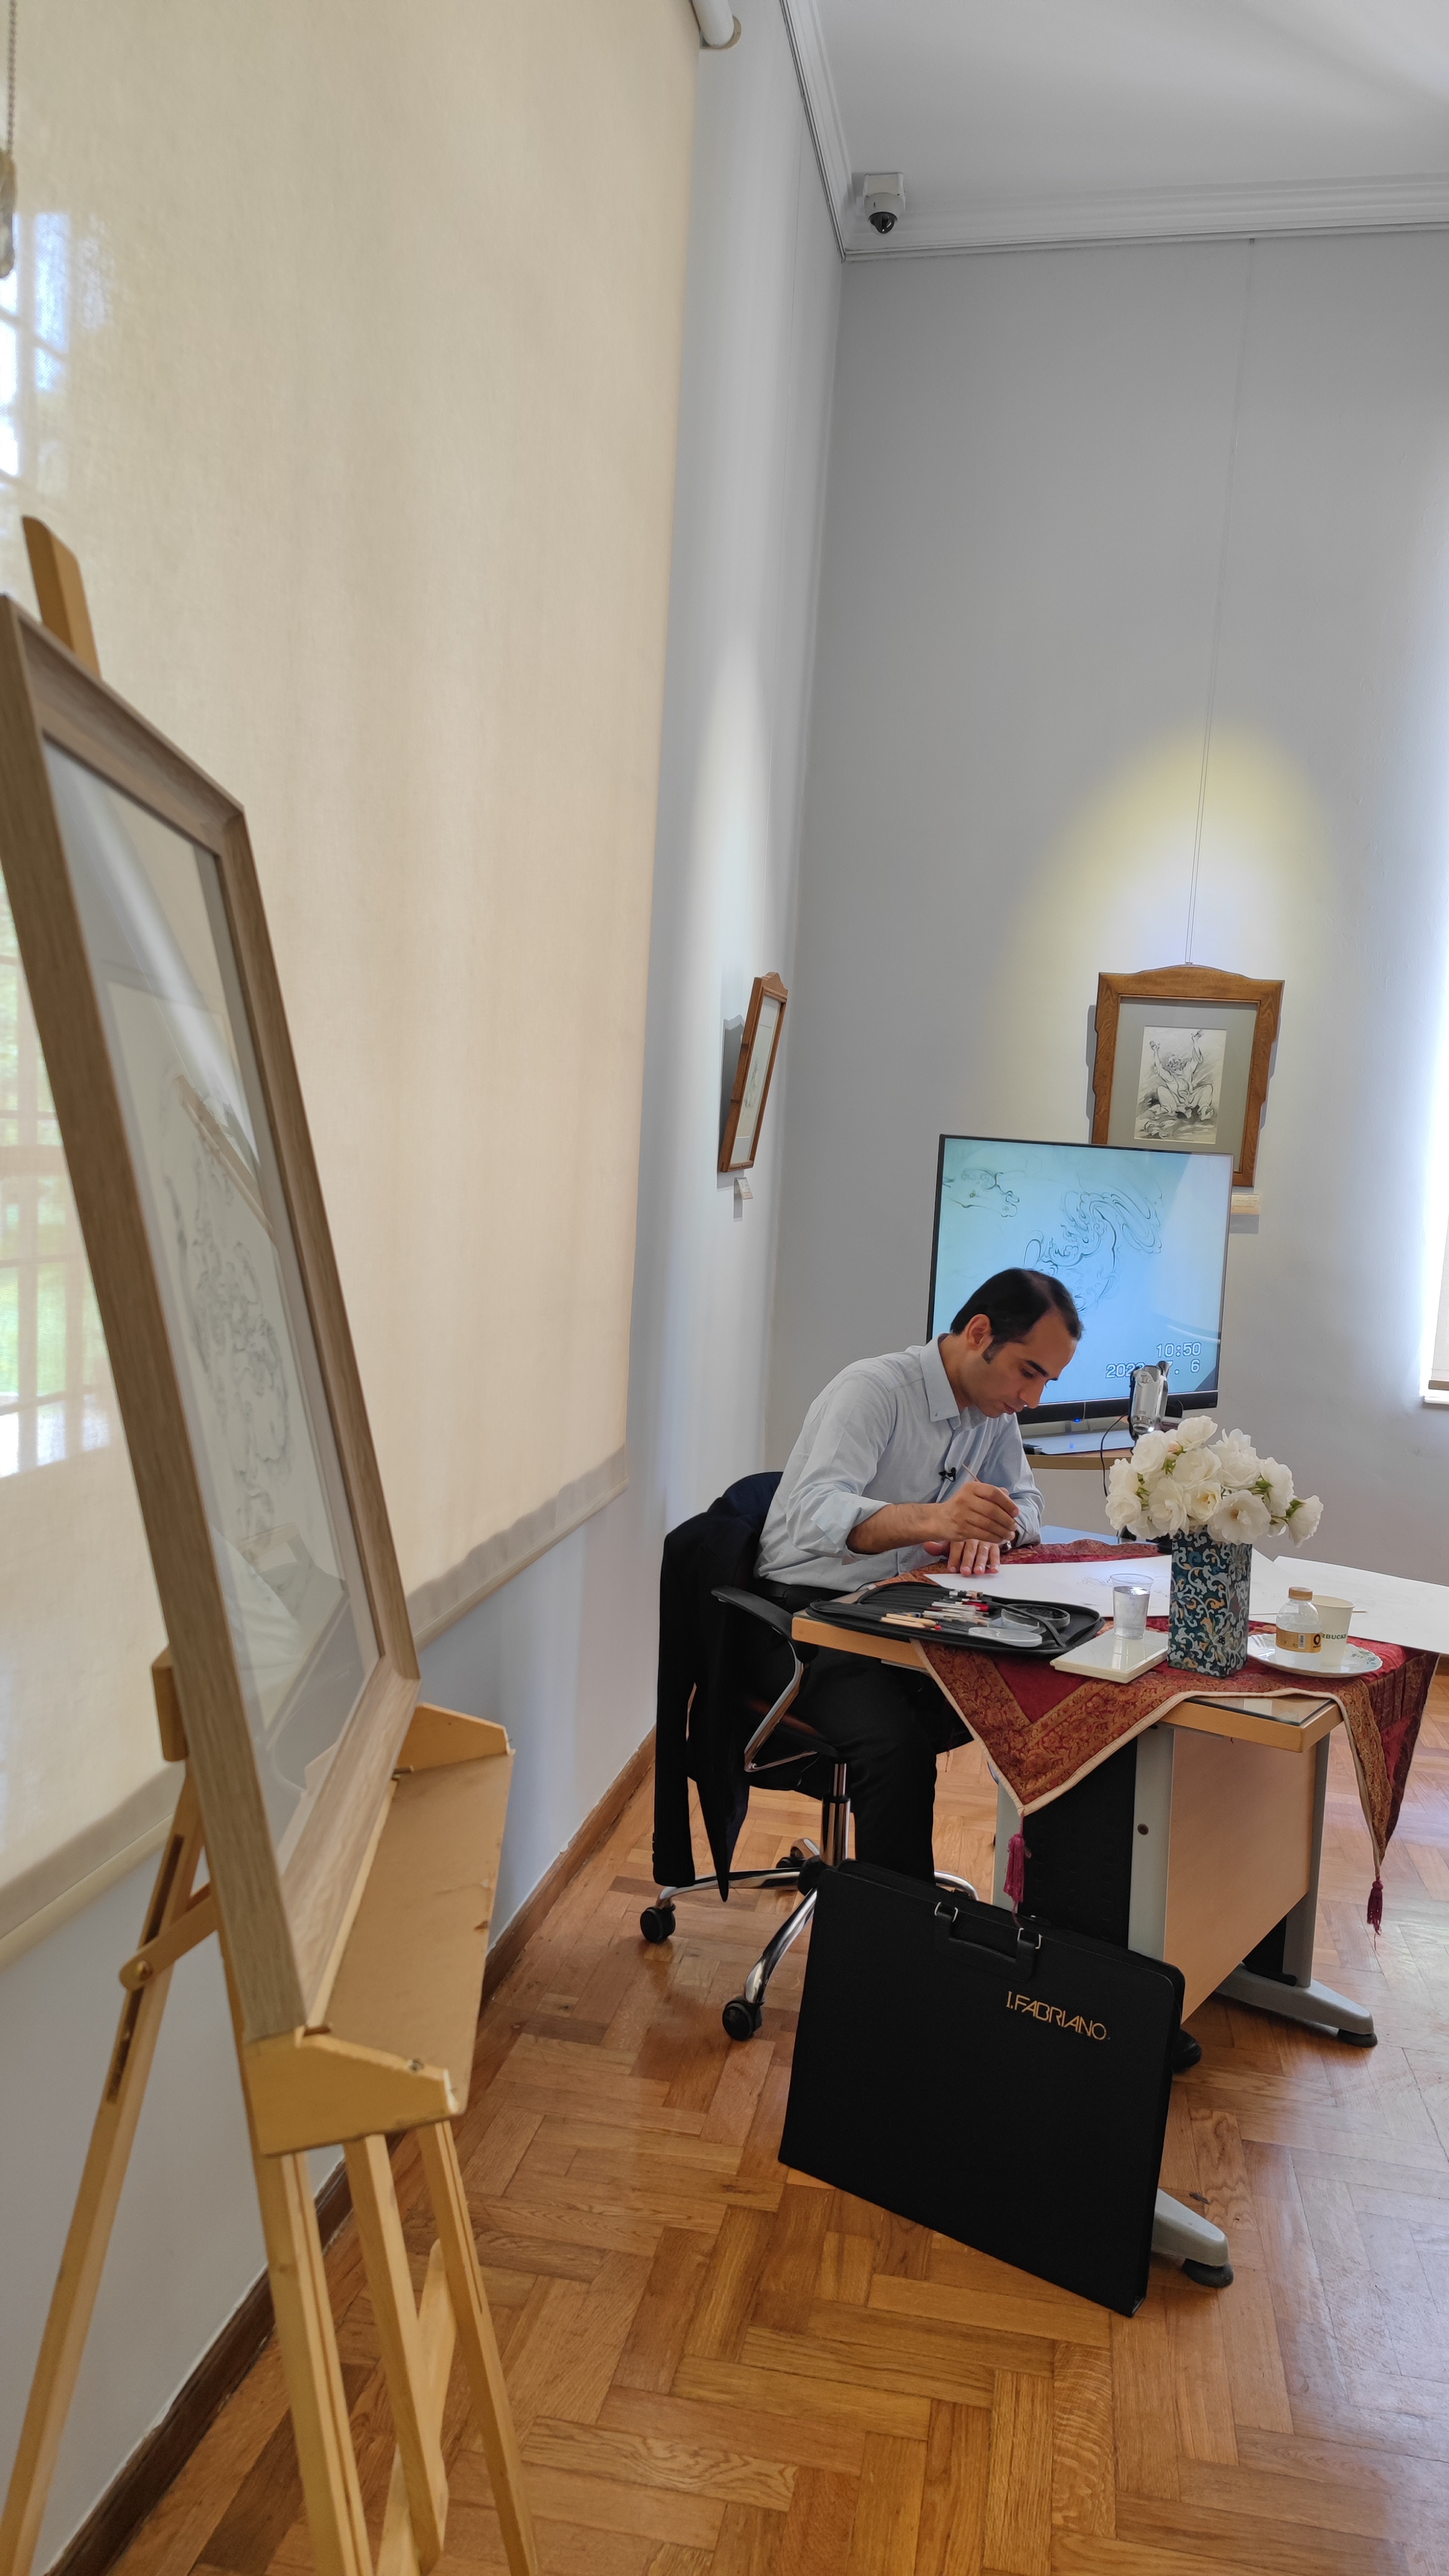 کارگاه آموزشی « تشعیر در نقاشی ایرانی» درموزه استاد بهزاد 